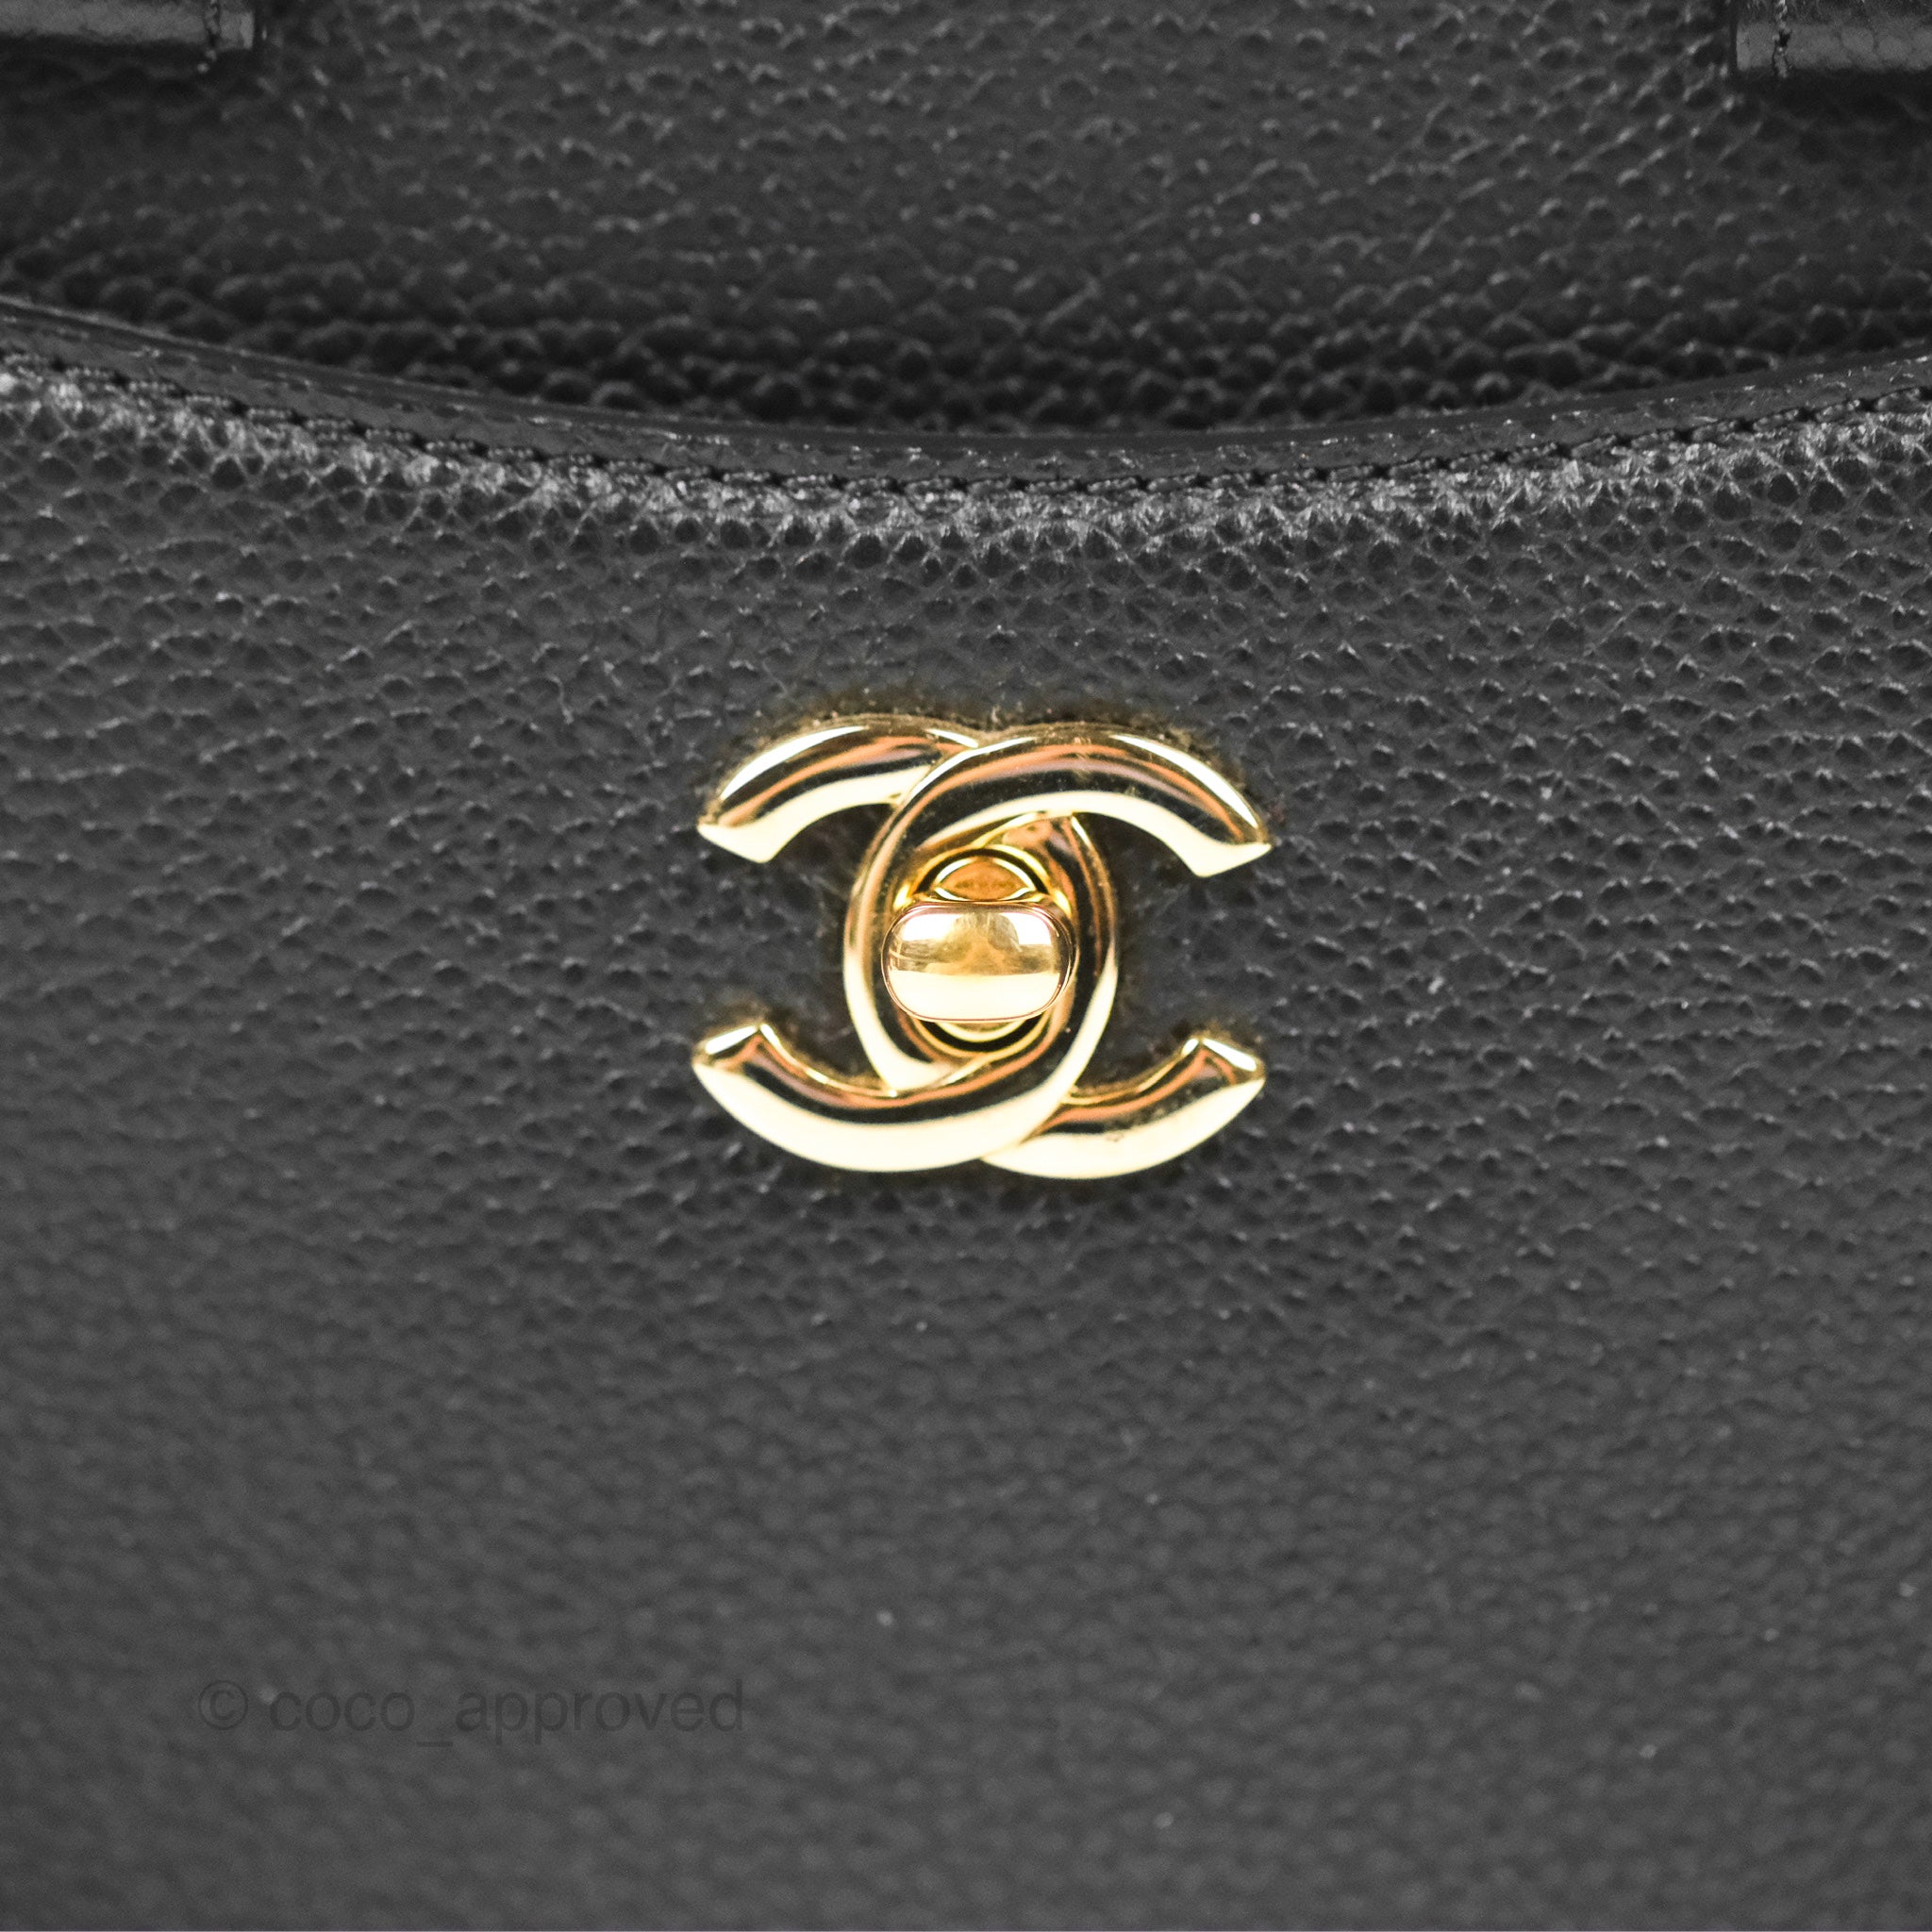 Chanel Mini Neo Executive Shopper Tote Black Grained Calfskin Gold